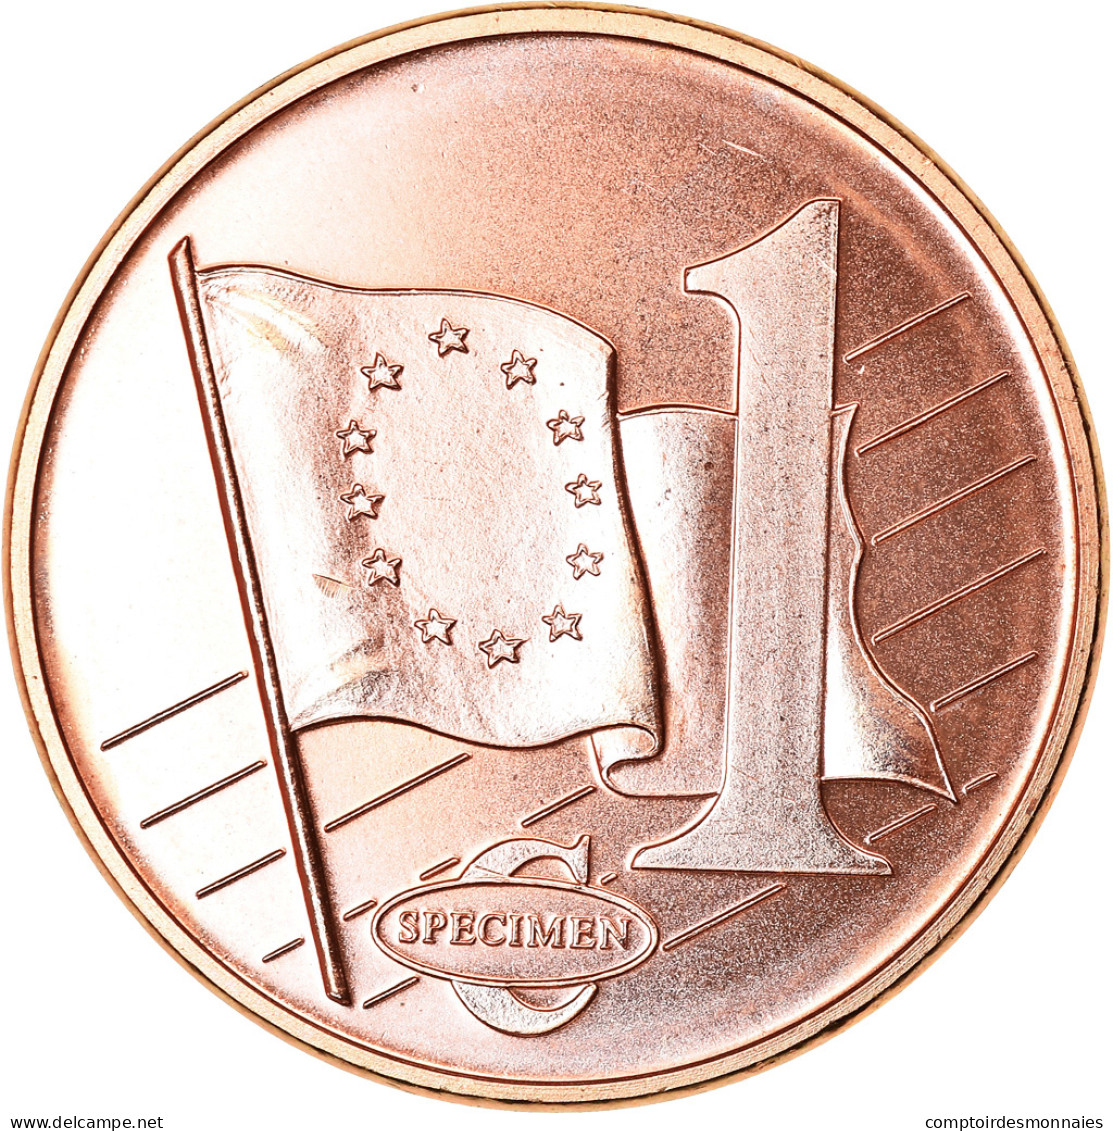 Suède, Euro Cent, 2004, Unofficial Private Coin, SPL, Copper Plated Steel - Essais Privés / Non-officiels